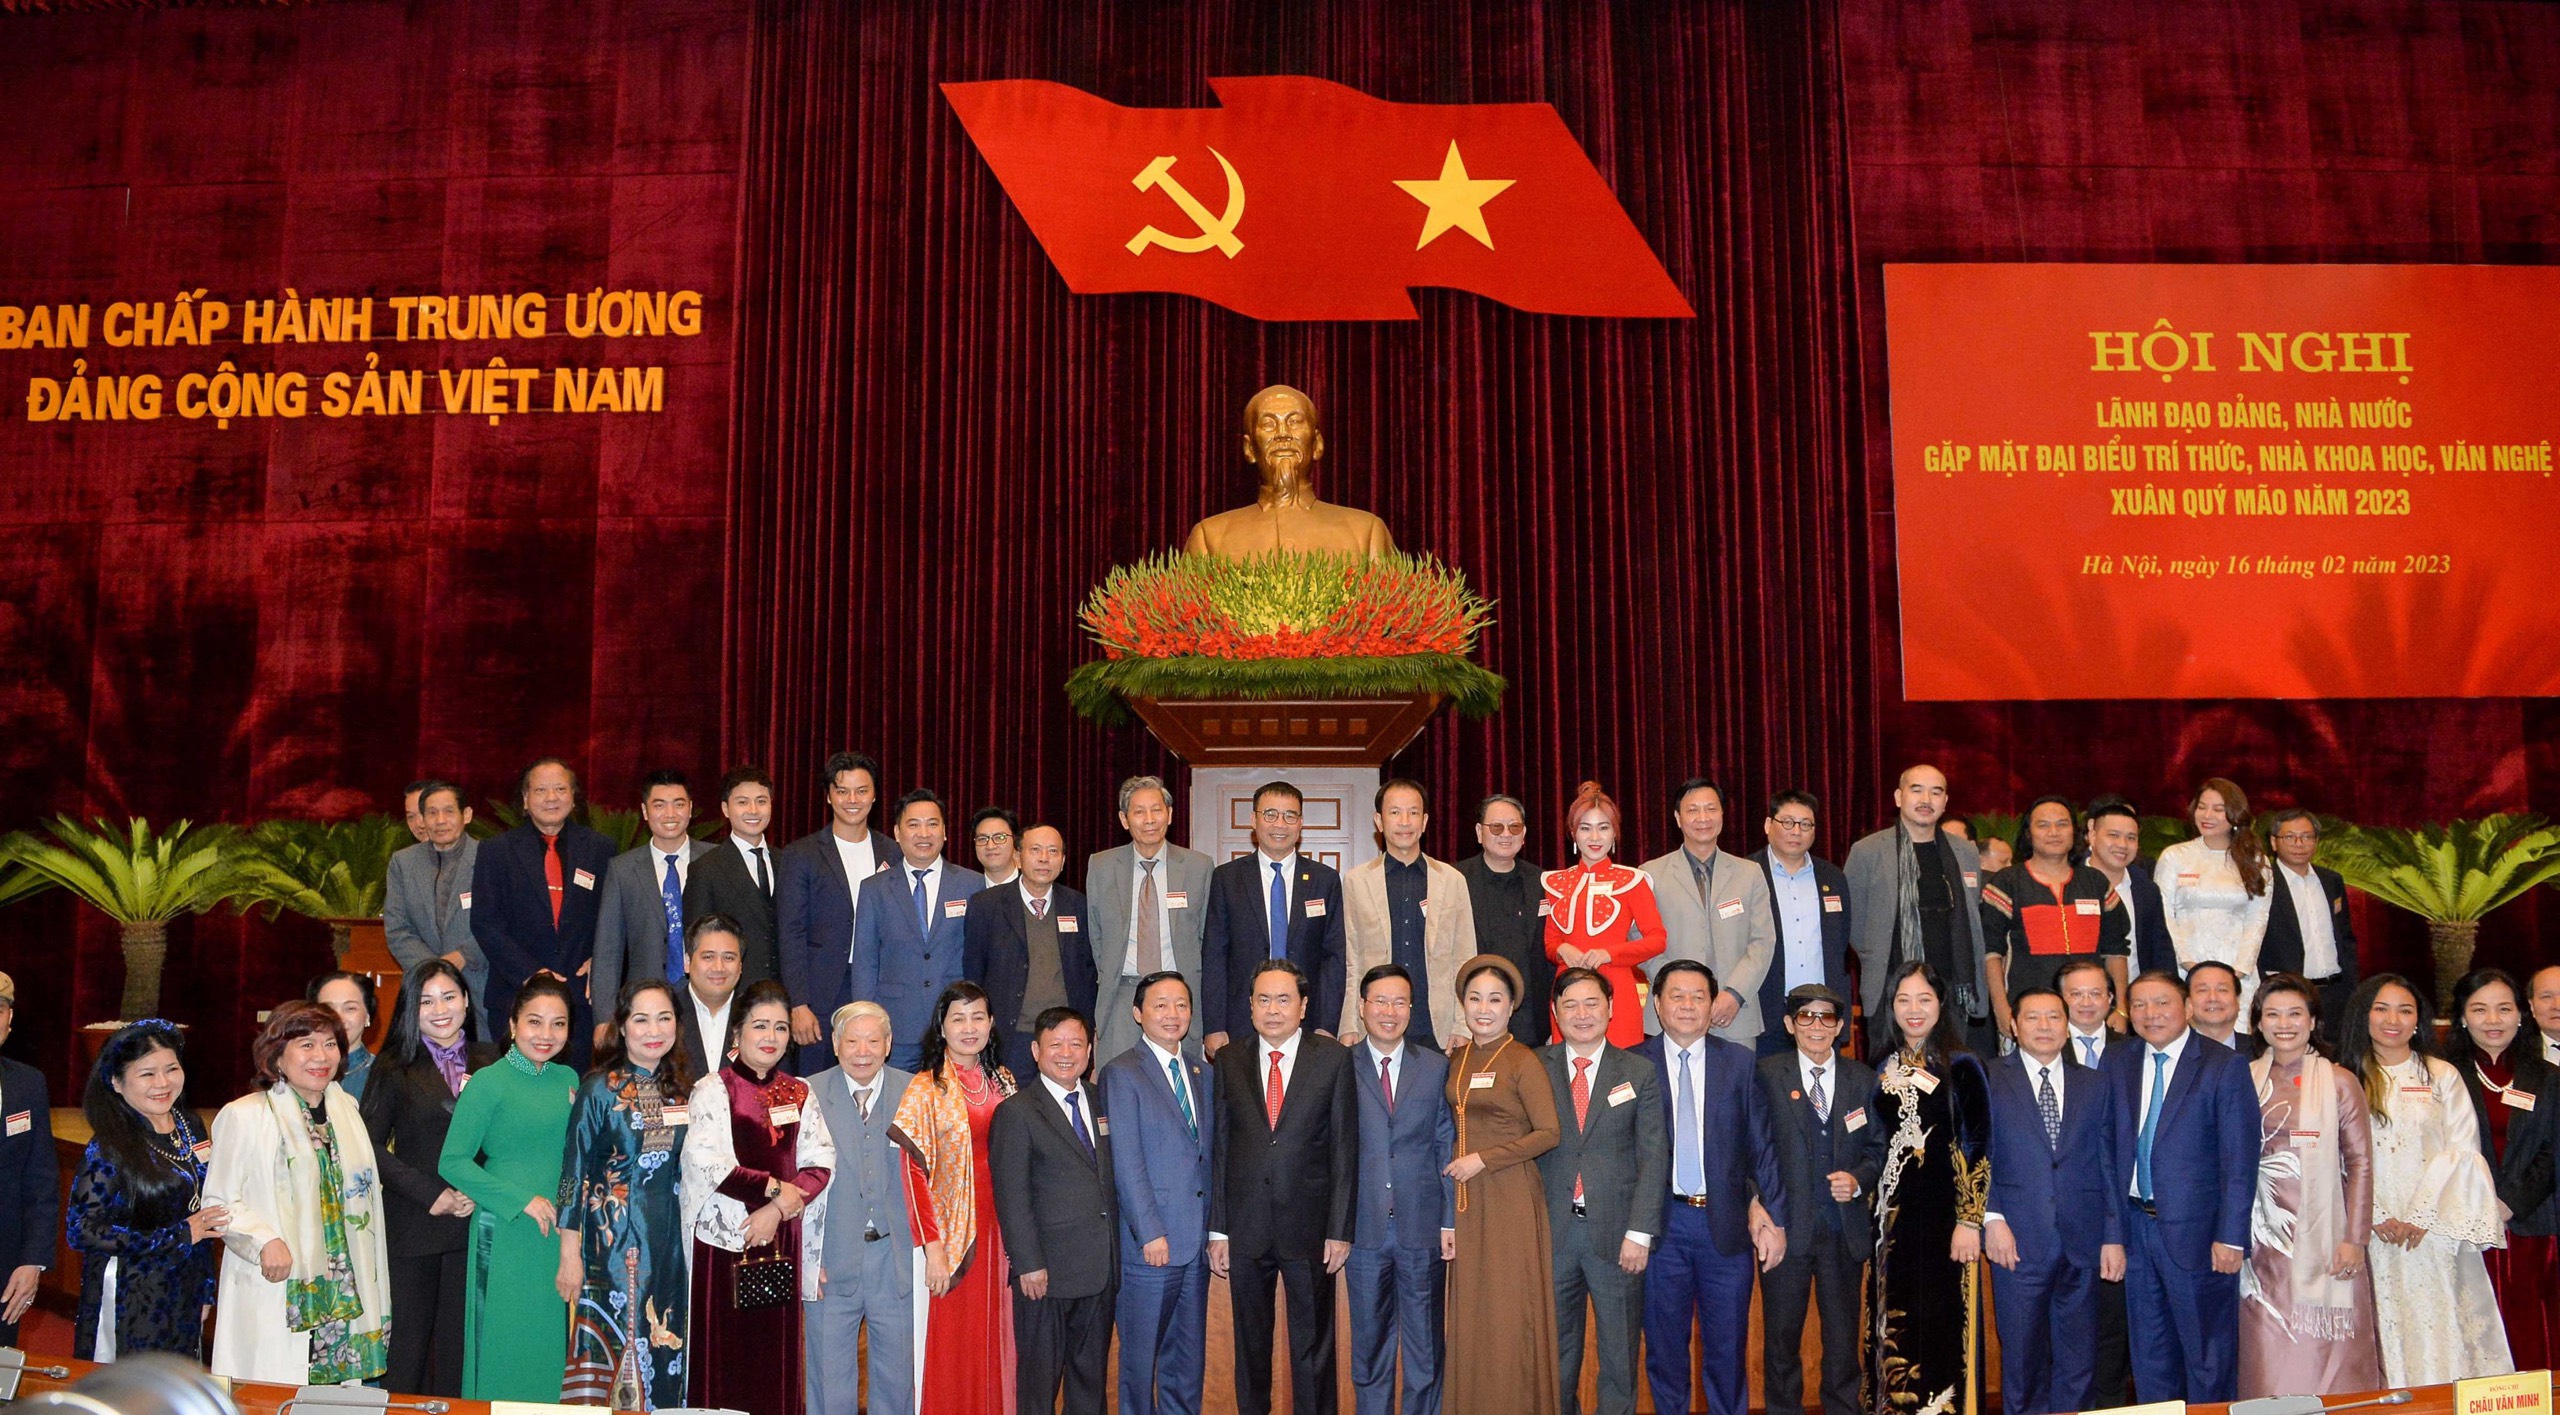 Phát biểu của Chủ tịch Liên hiệp các Hội Văn học nghệ thuật Việt Nam Đỗ Hồng Quân tại Hội nghị gặp mặt đại biểu trí thức, nhà khoa học, văn nghệ sĩ Xuân Quý Mão 2023 - 2